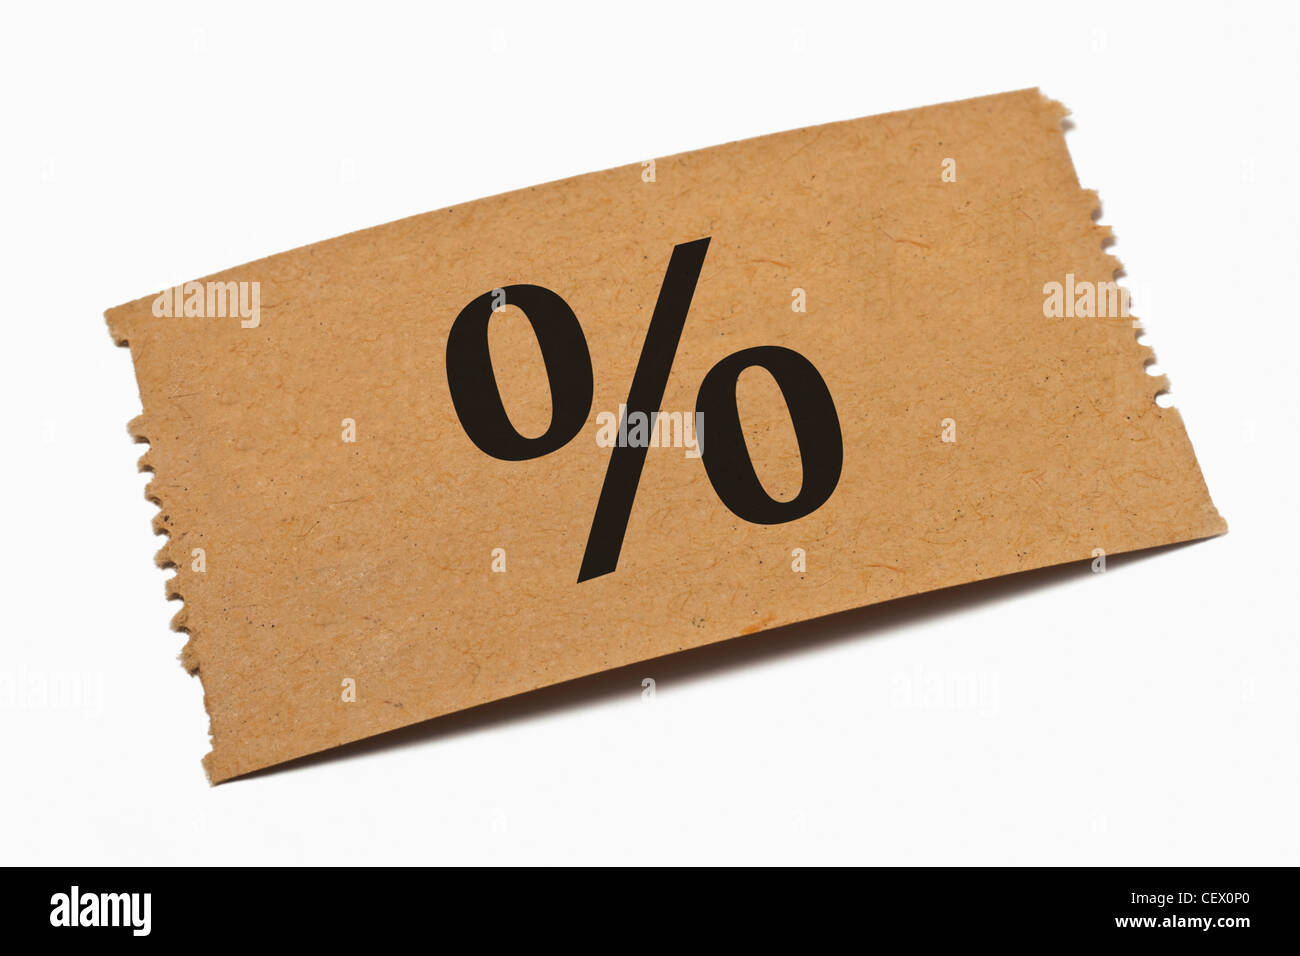 Detailansicht einer Karte aus Papier mit einem Prozent Symbol | Detail photo of a paper card with a percentage sign Stock Photo